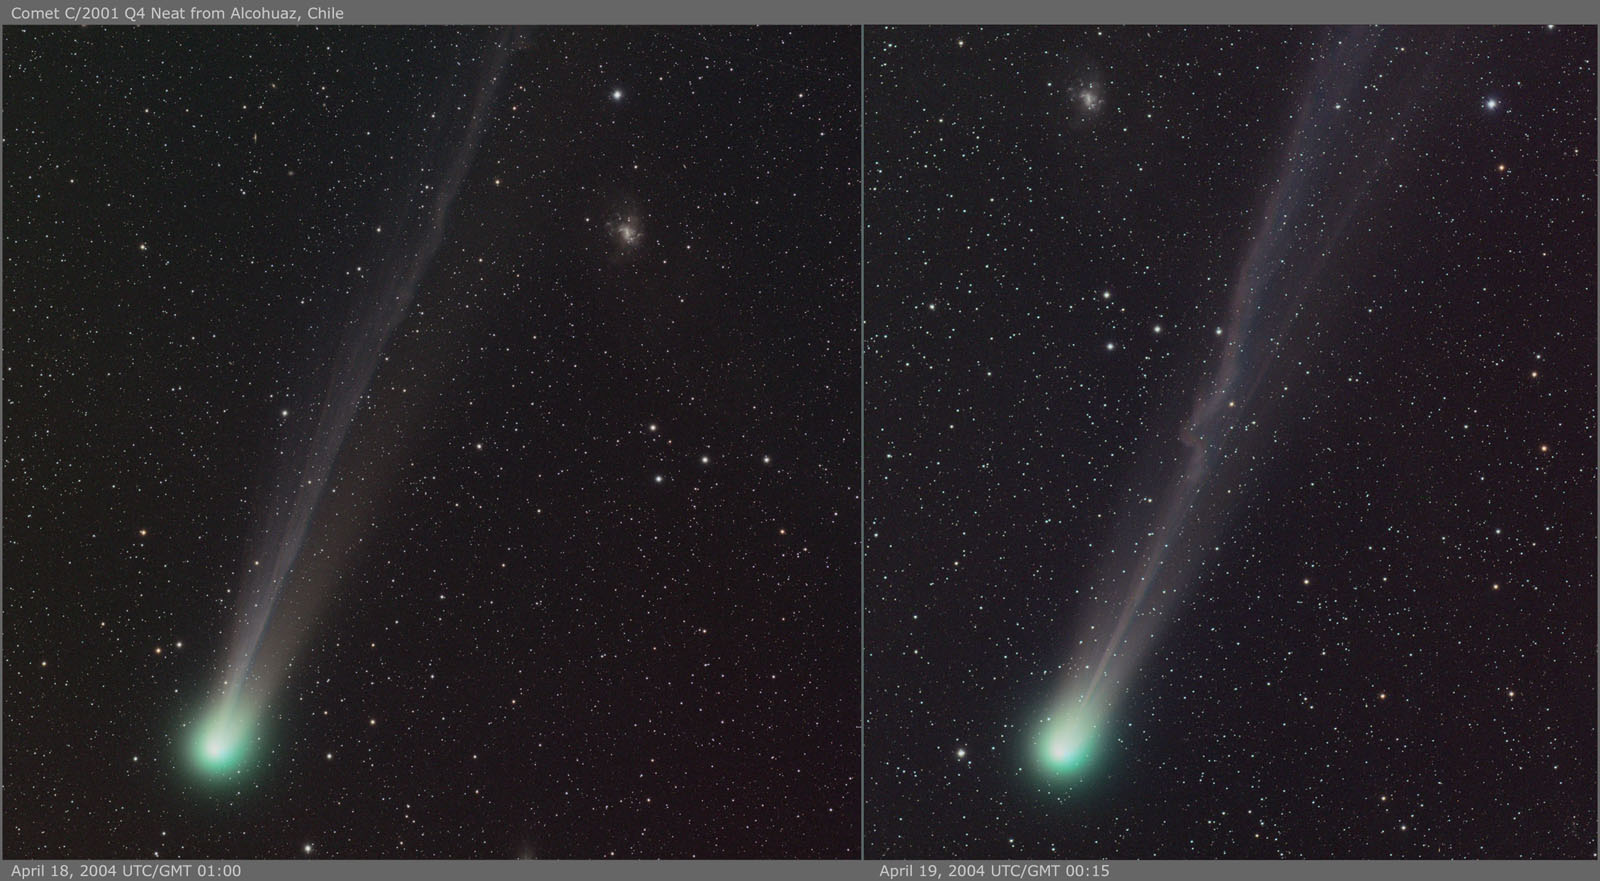 Comet C 2001 Q4 (NEAT)